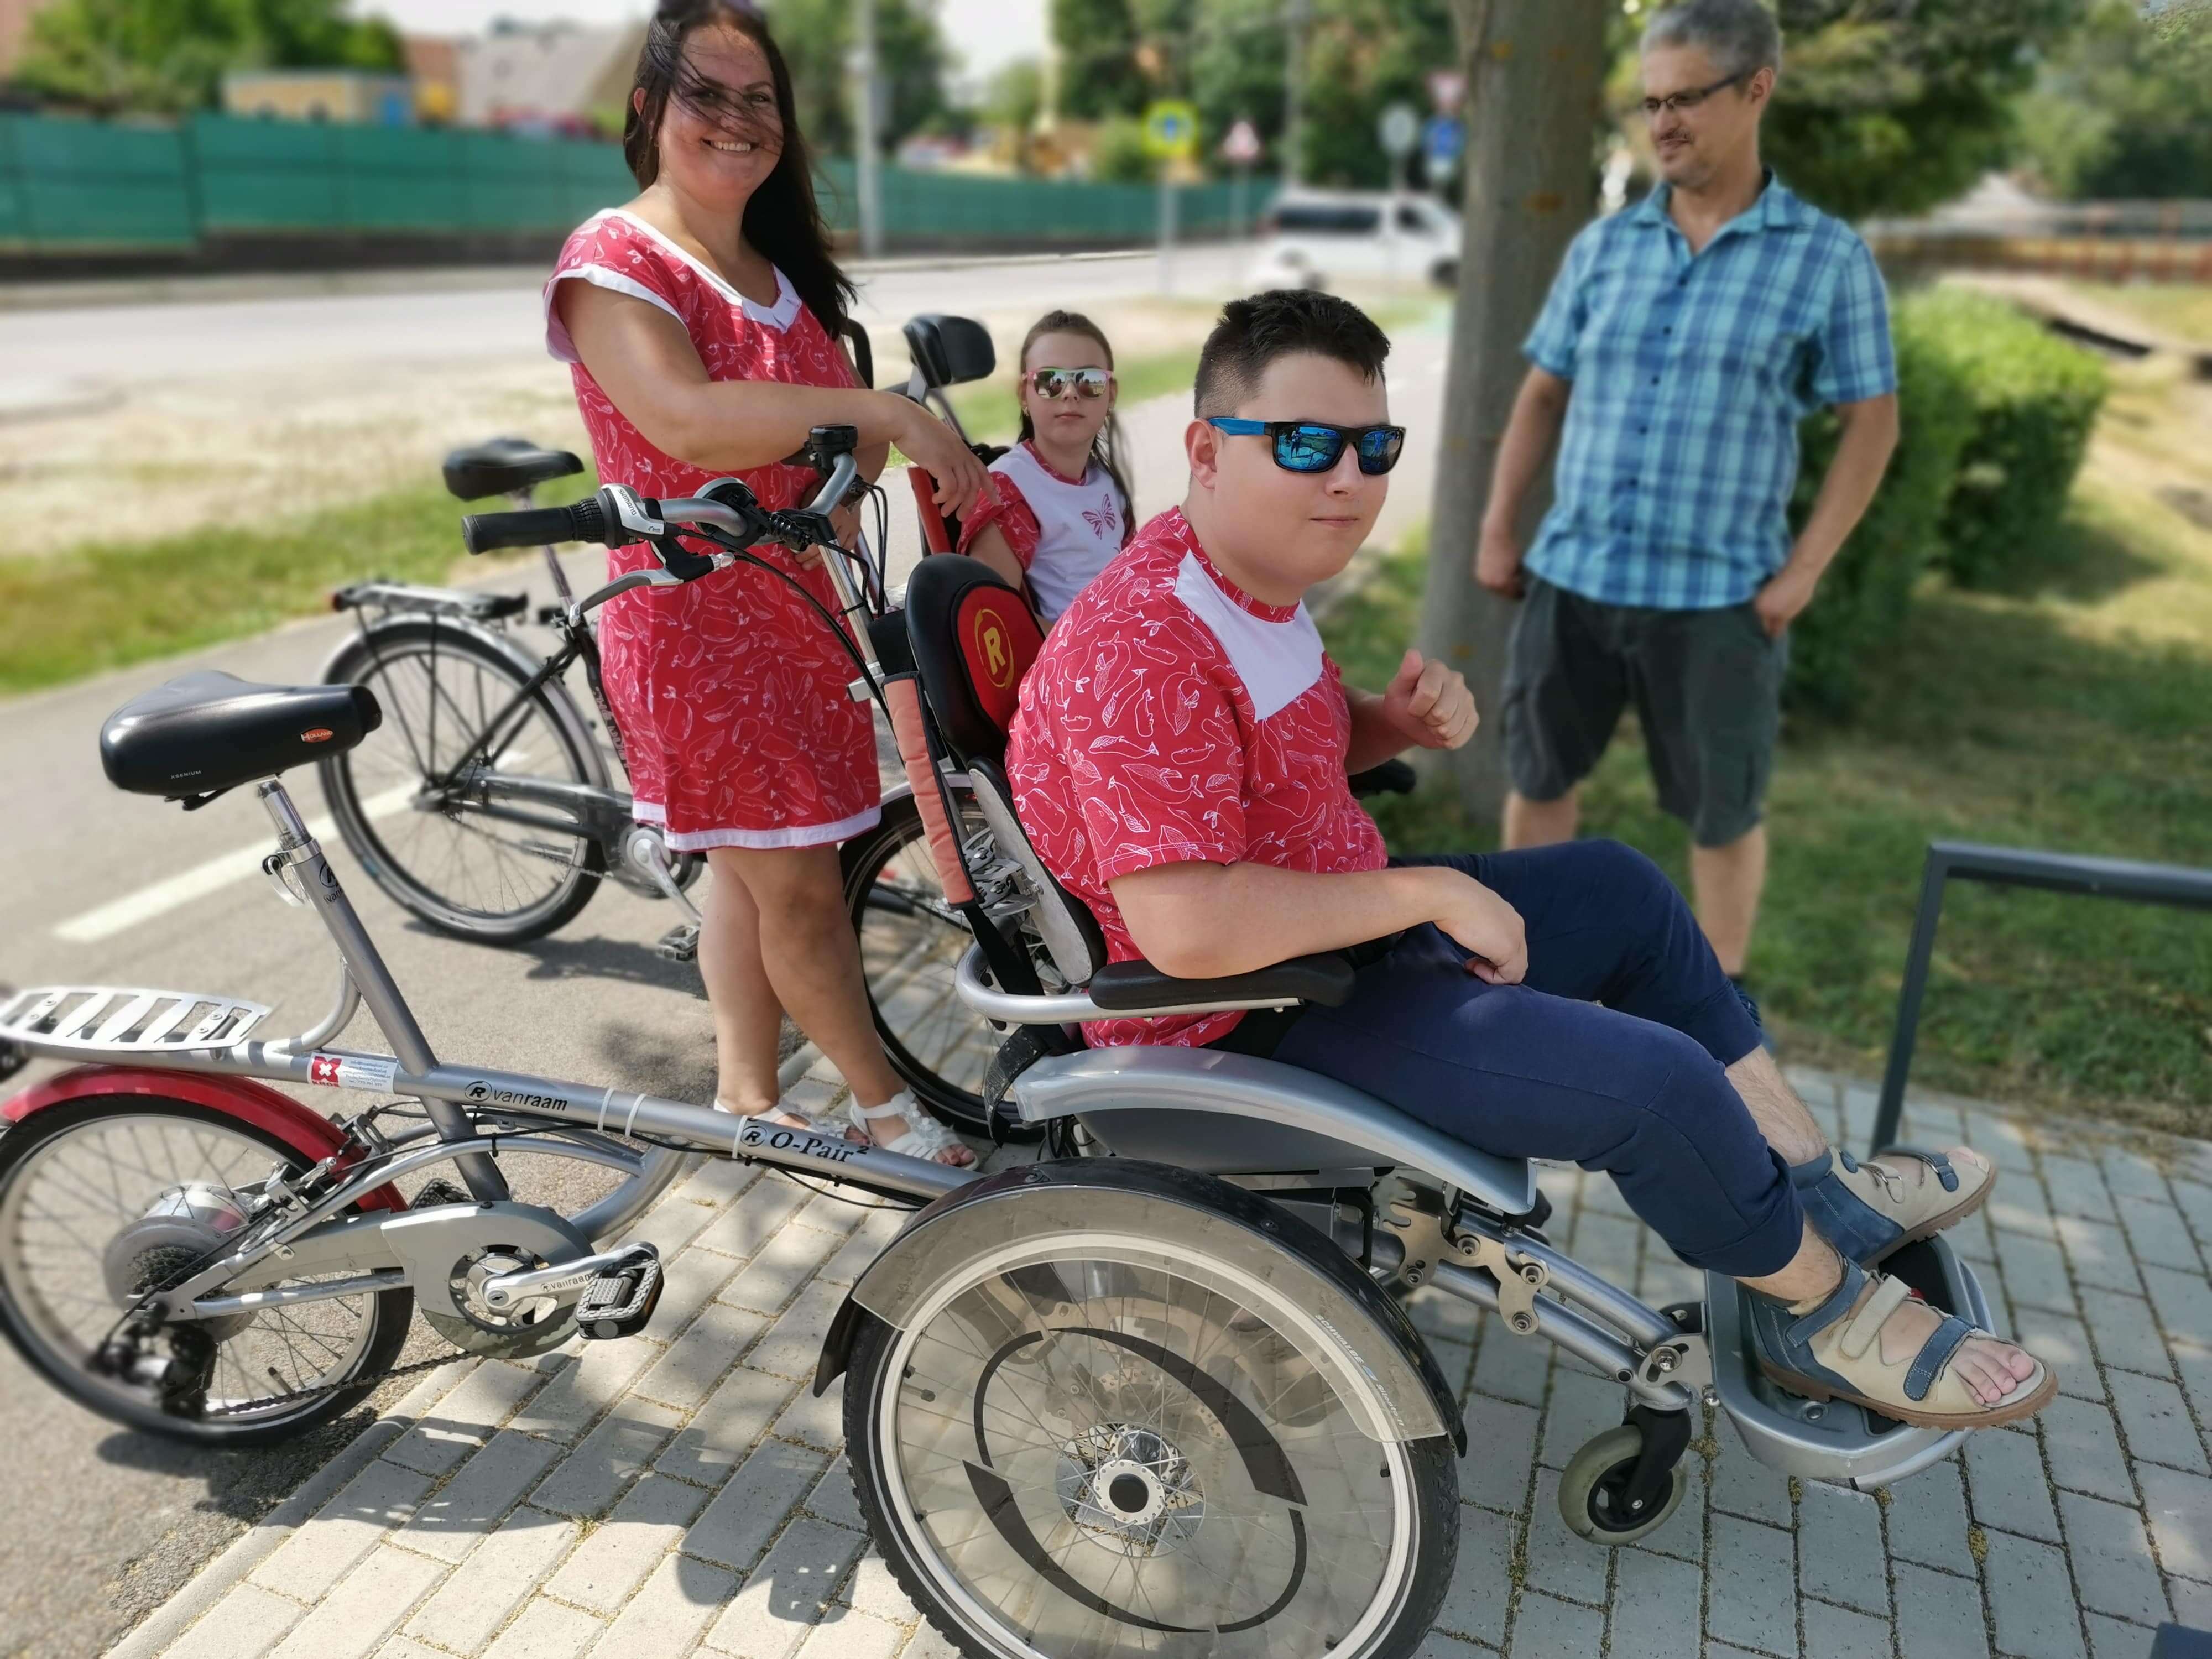 Chlapec na vozíku, ktorý je pripevnený na bicykli a zvyšok rodiny - otec, mama, sestra